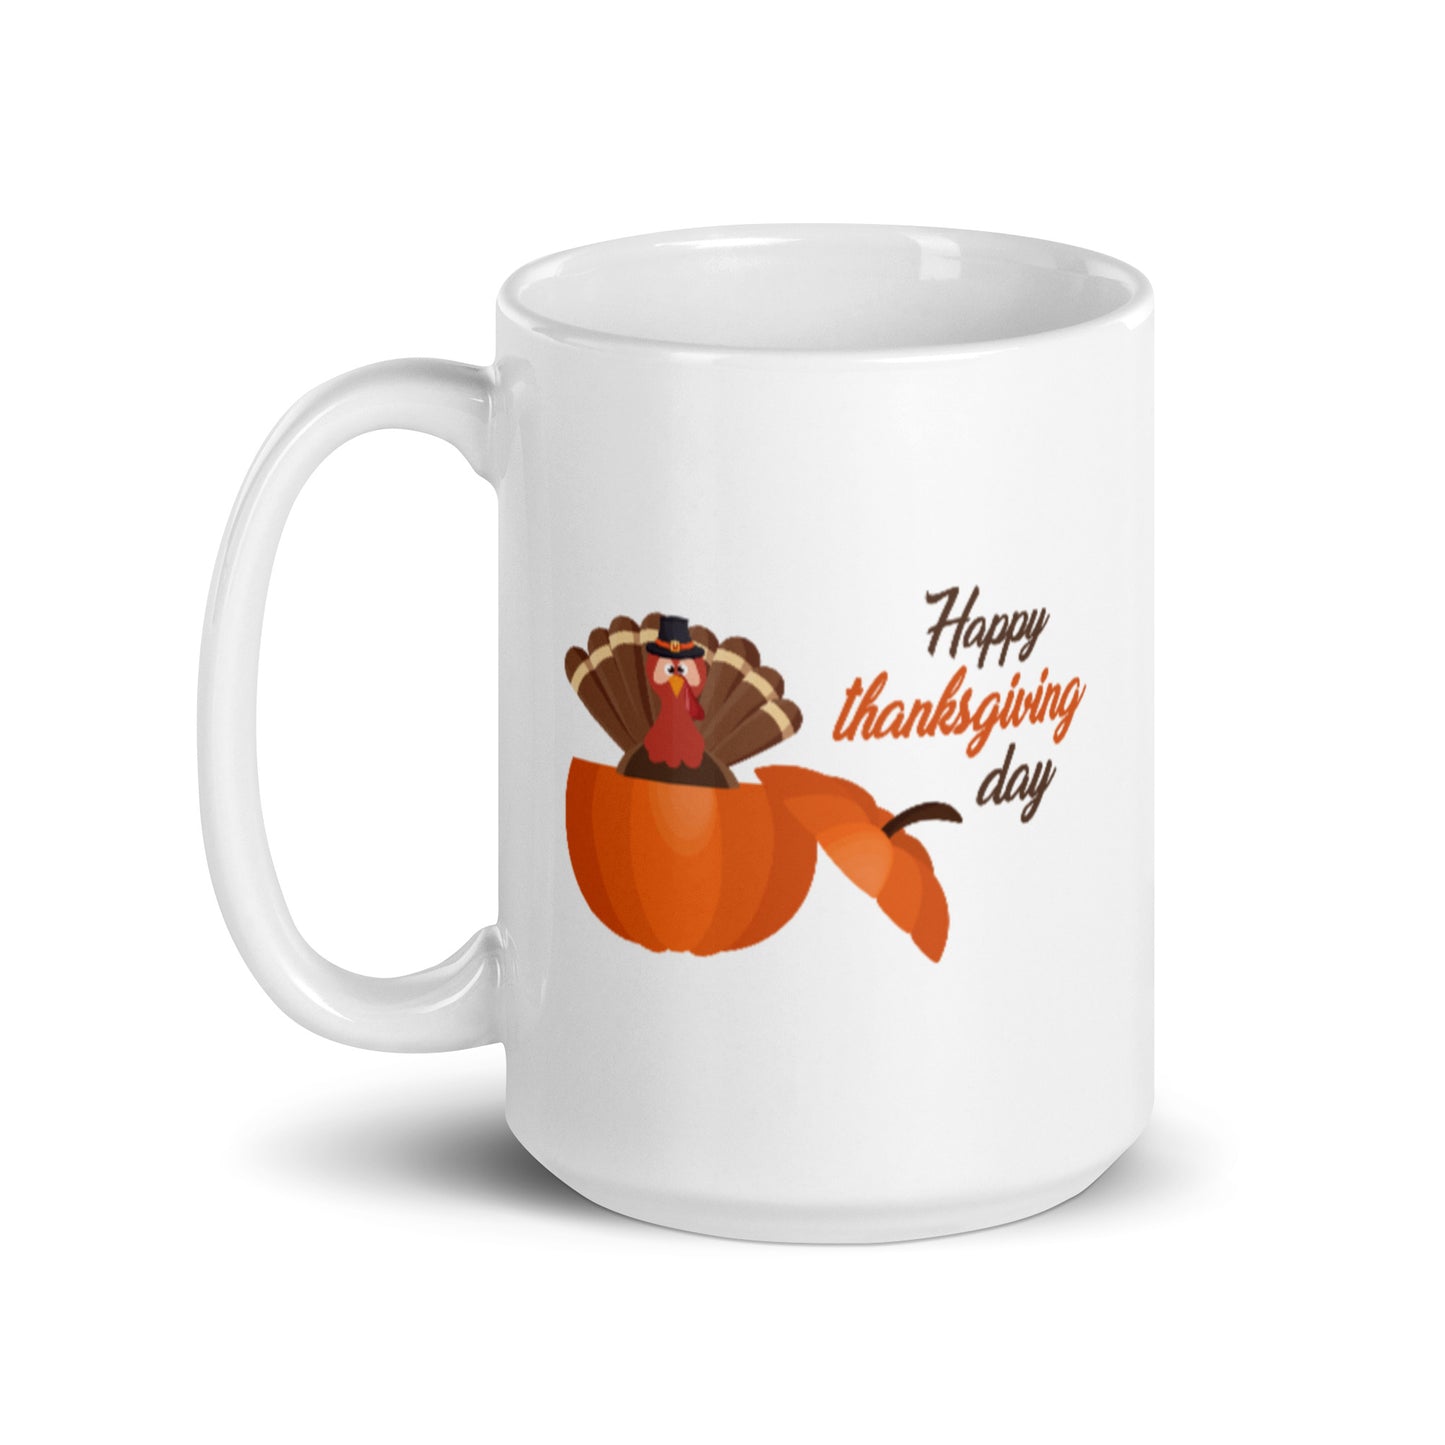 Happy Thanksgiving Day White glossy mug